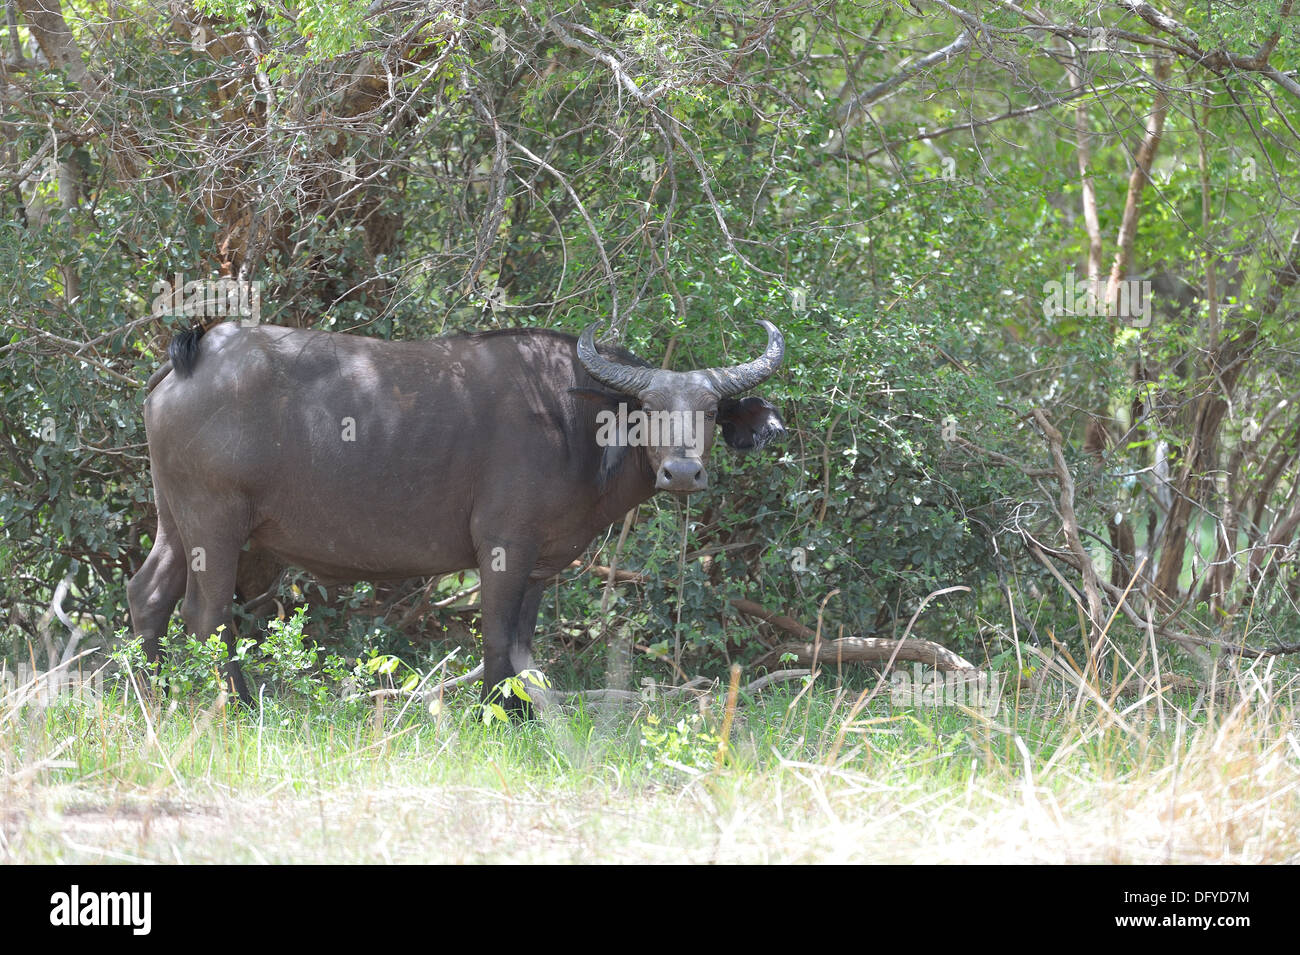 Al oeste el búfalo africano (Syncerus caffer) en el Parque Regional de Bush W - W Parque Transfronterizo - Níger - Benin, Burkina Faso Foto de stock